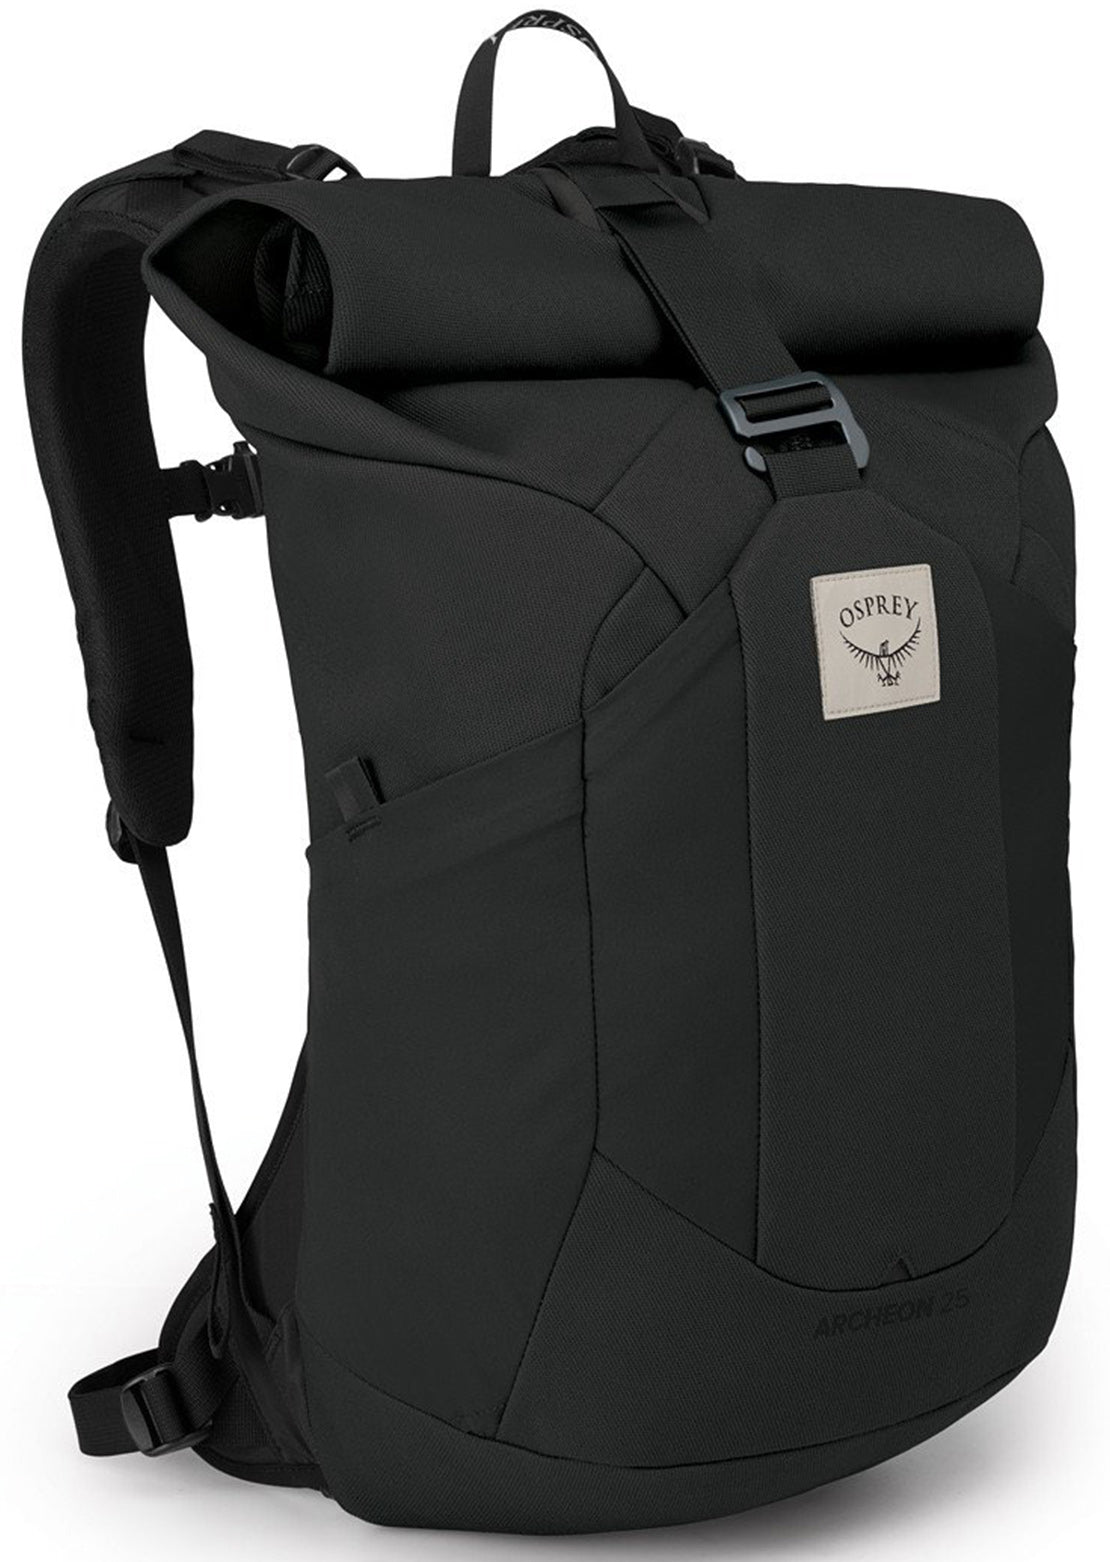 Osprey Unisex Archeon 25 Backpack Stonewash Black